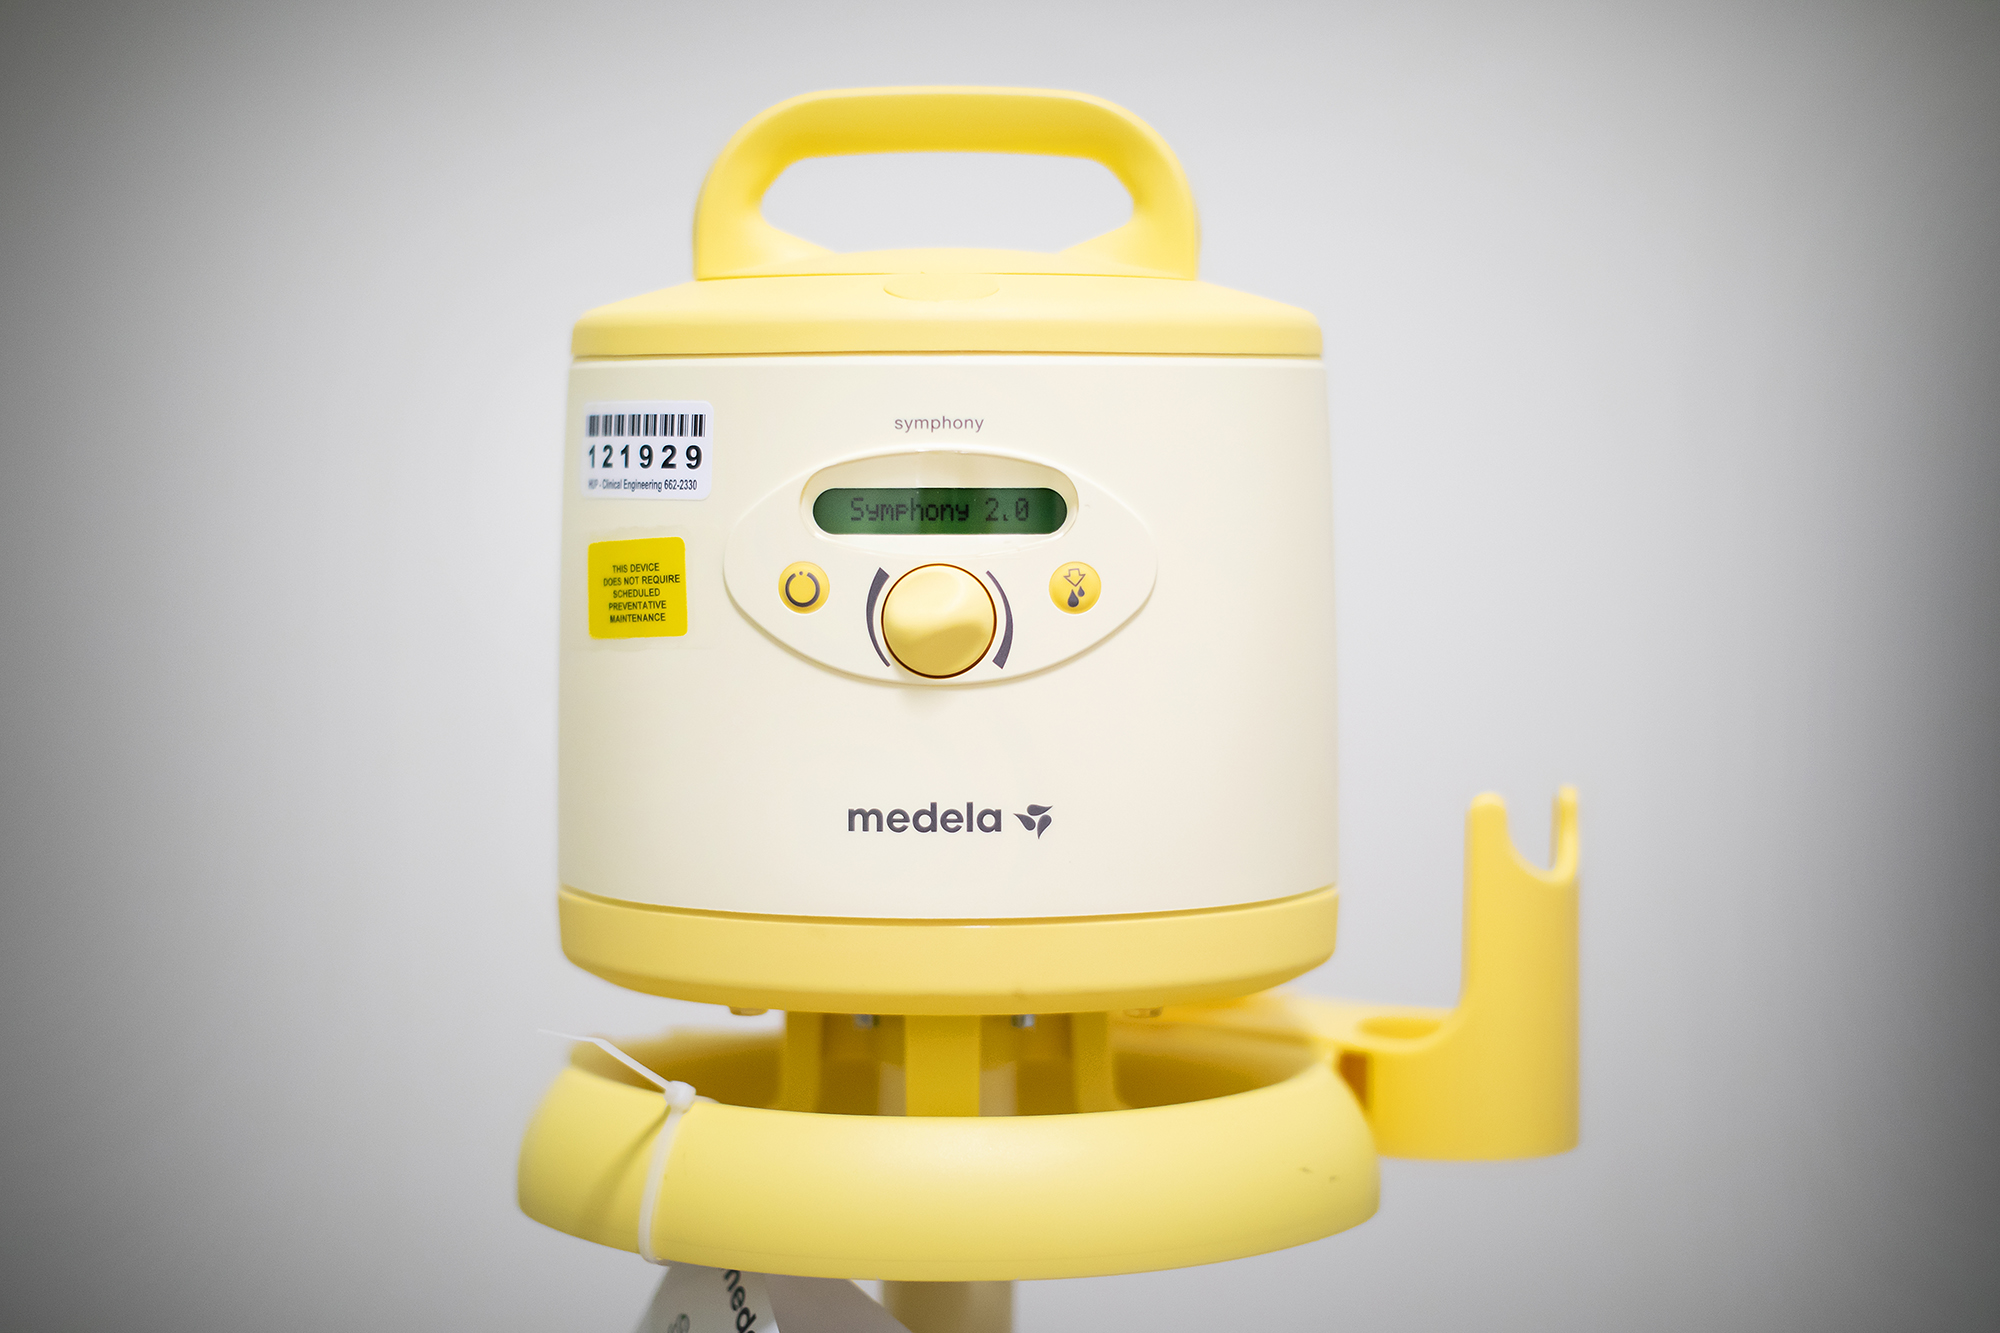 A Medela-brand hospital-grade breast pump